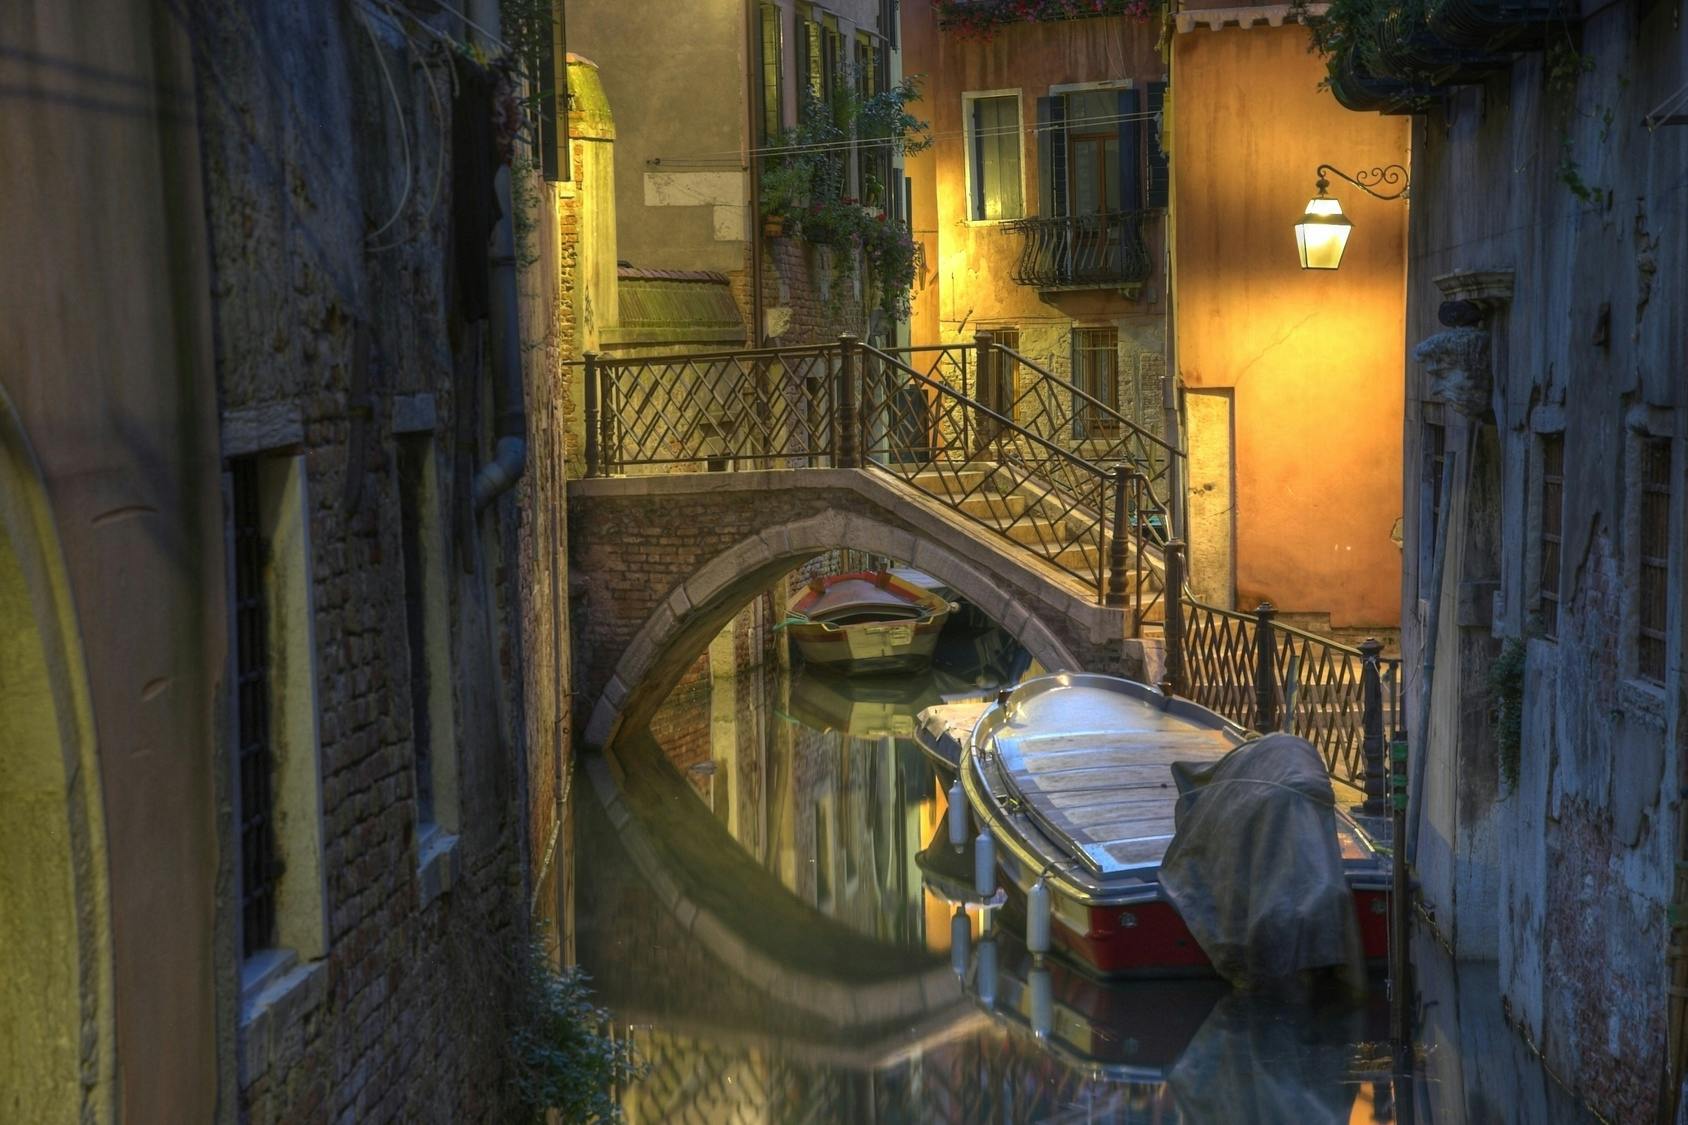 Passeio a pé original por fantasmas e lendas de Veneza à noite